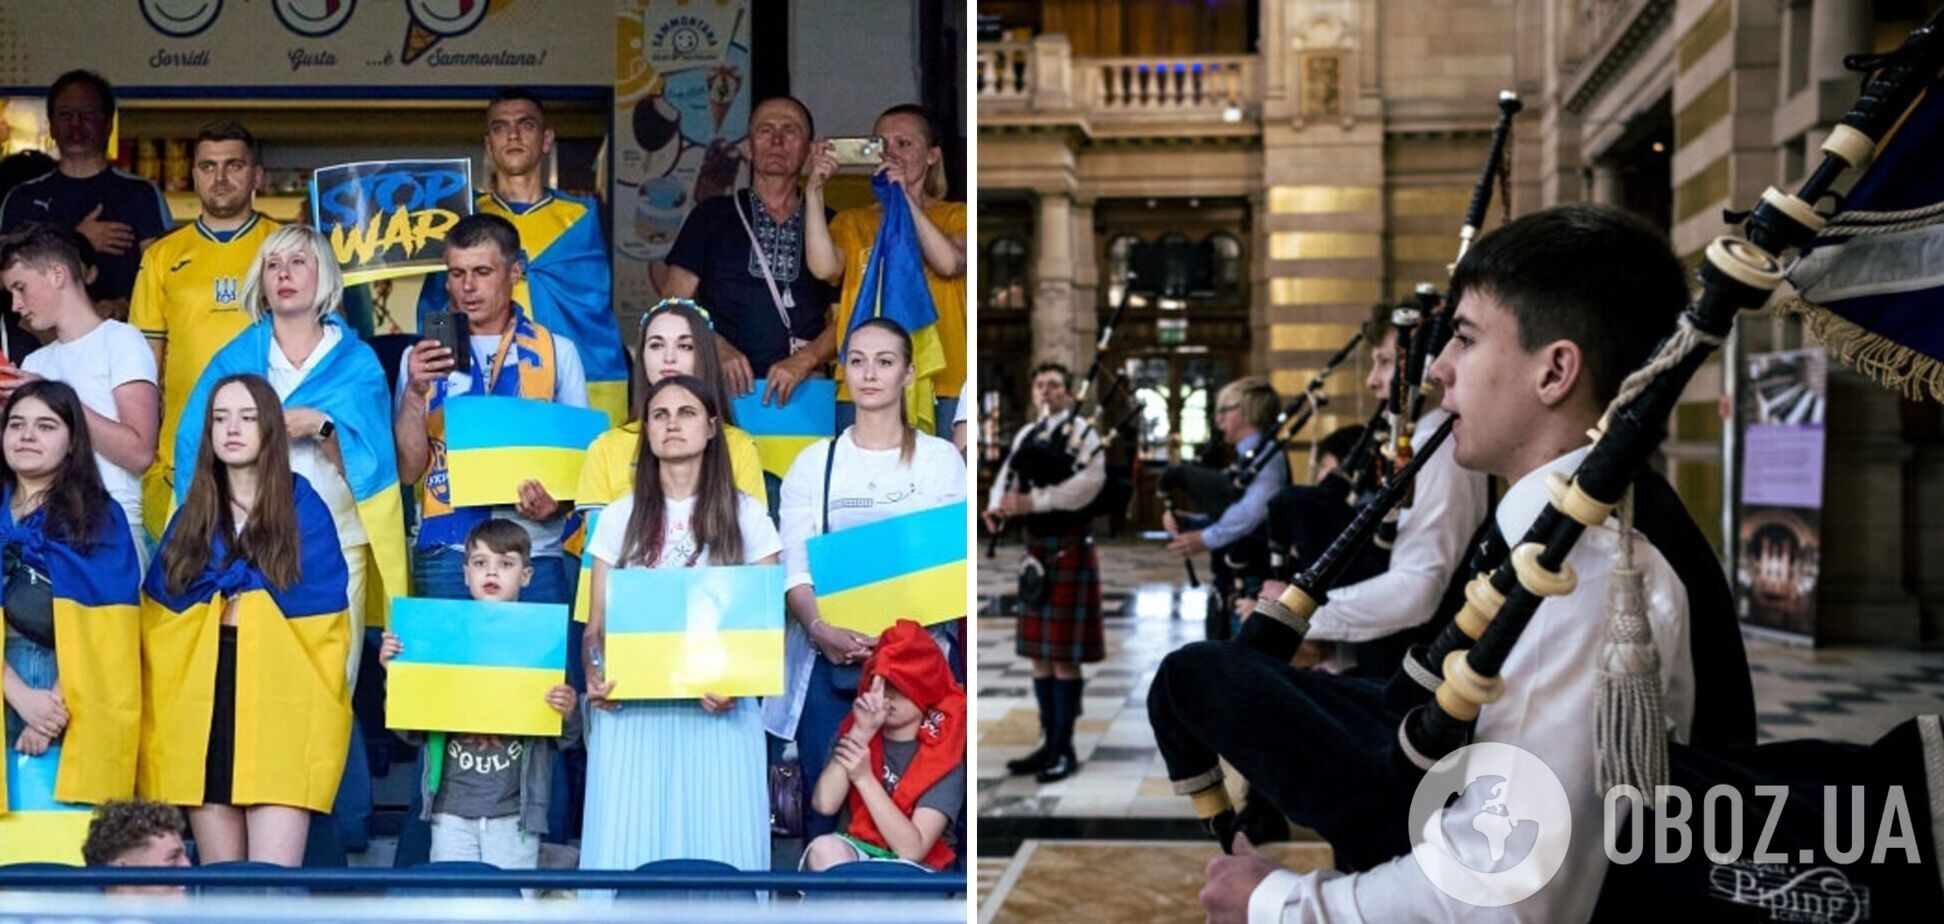 'В отличие от других': в Глазго перед стыковым матчем ЧМ-2022 исполнили гимн Украины, назвав его уникальным